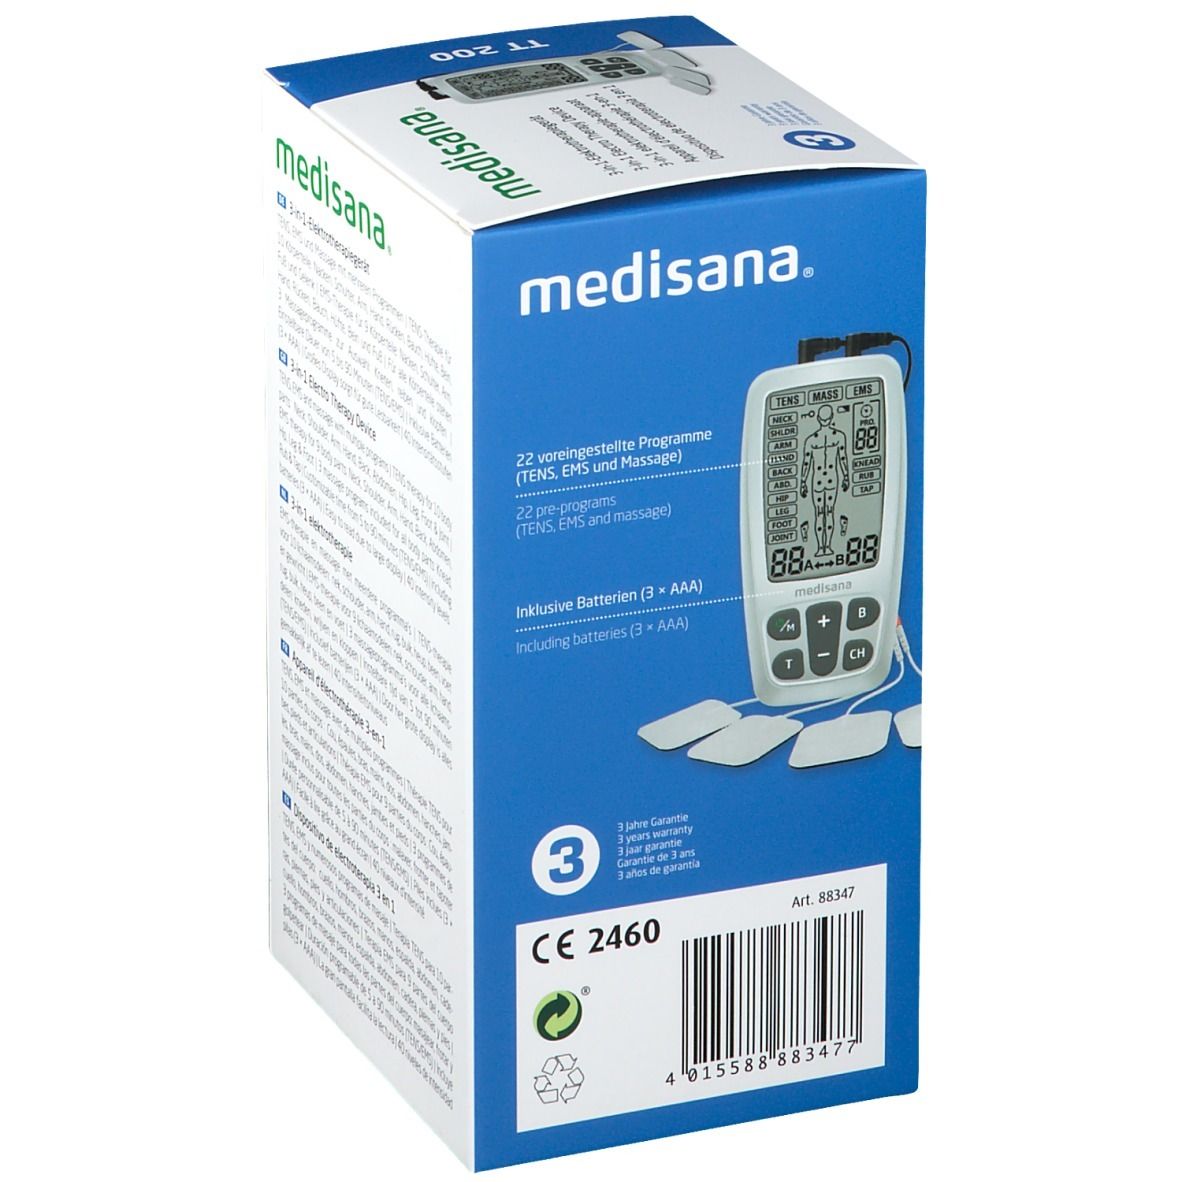 Medisana TT 200 - 3-in-1 Electrotherapy